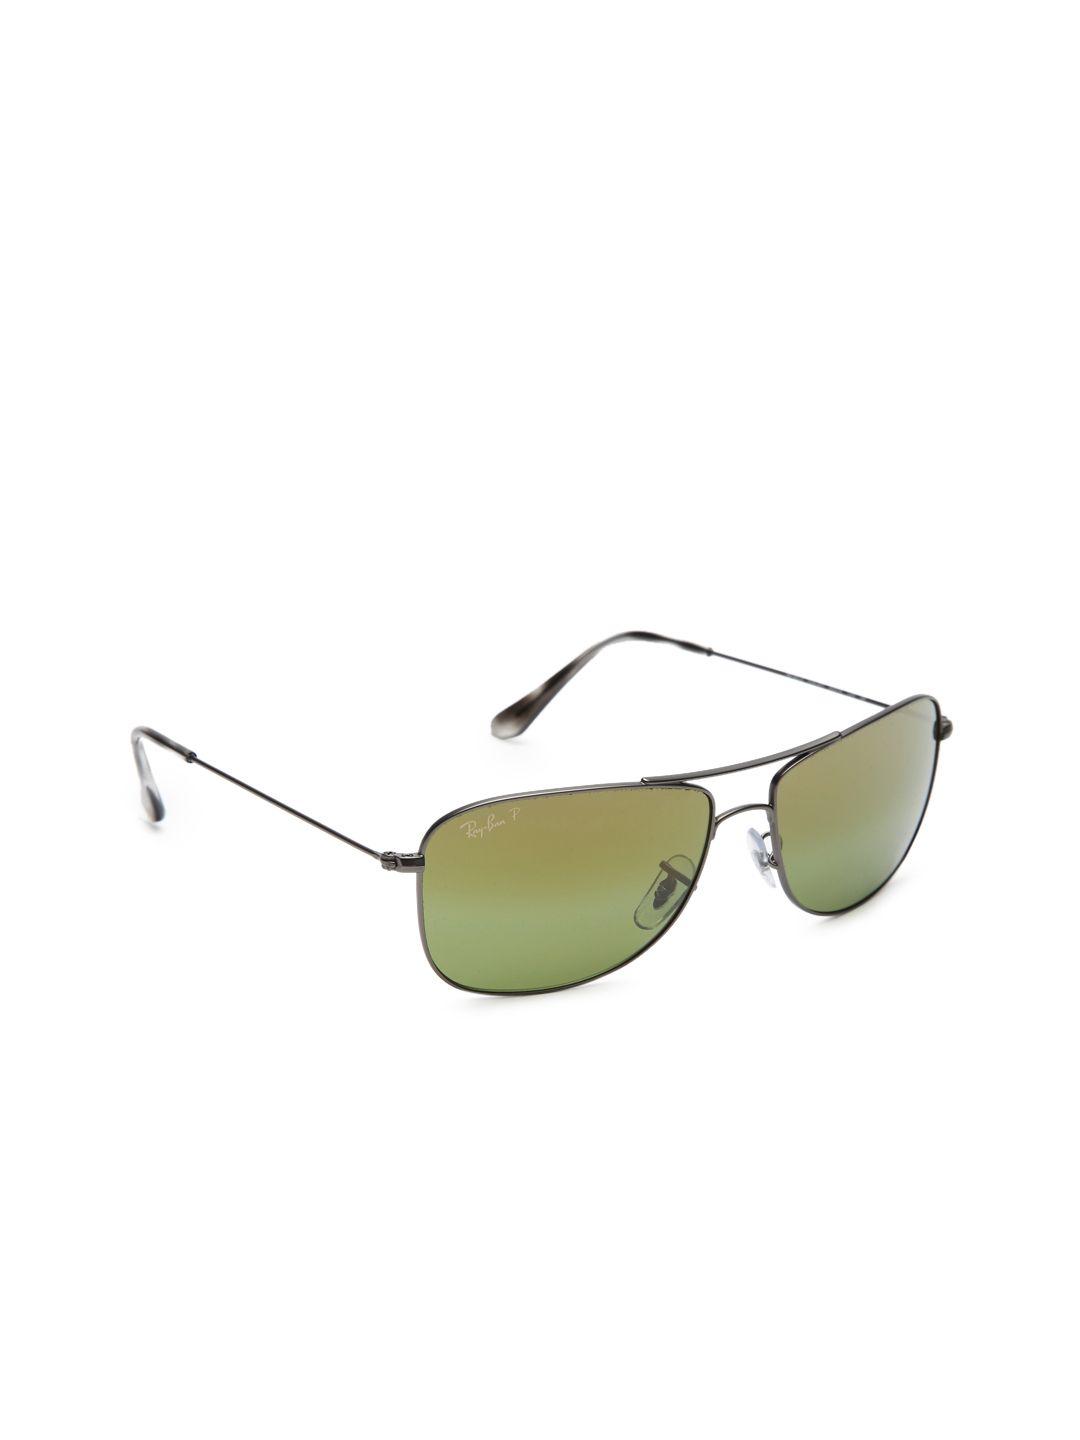 ray-ban unisex aviator sunglasses